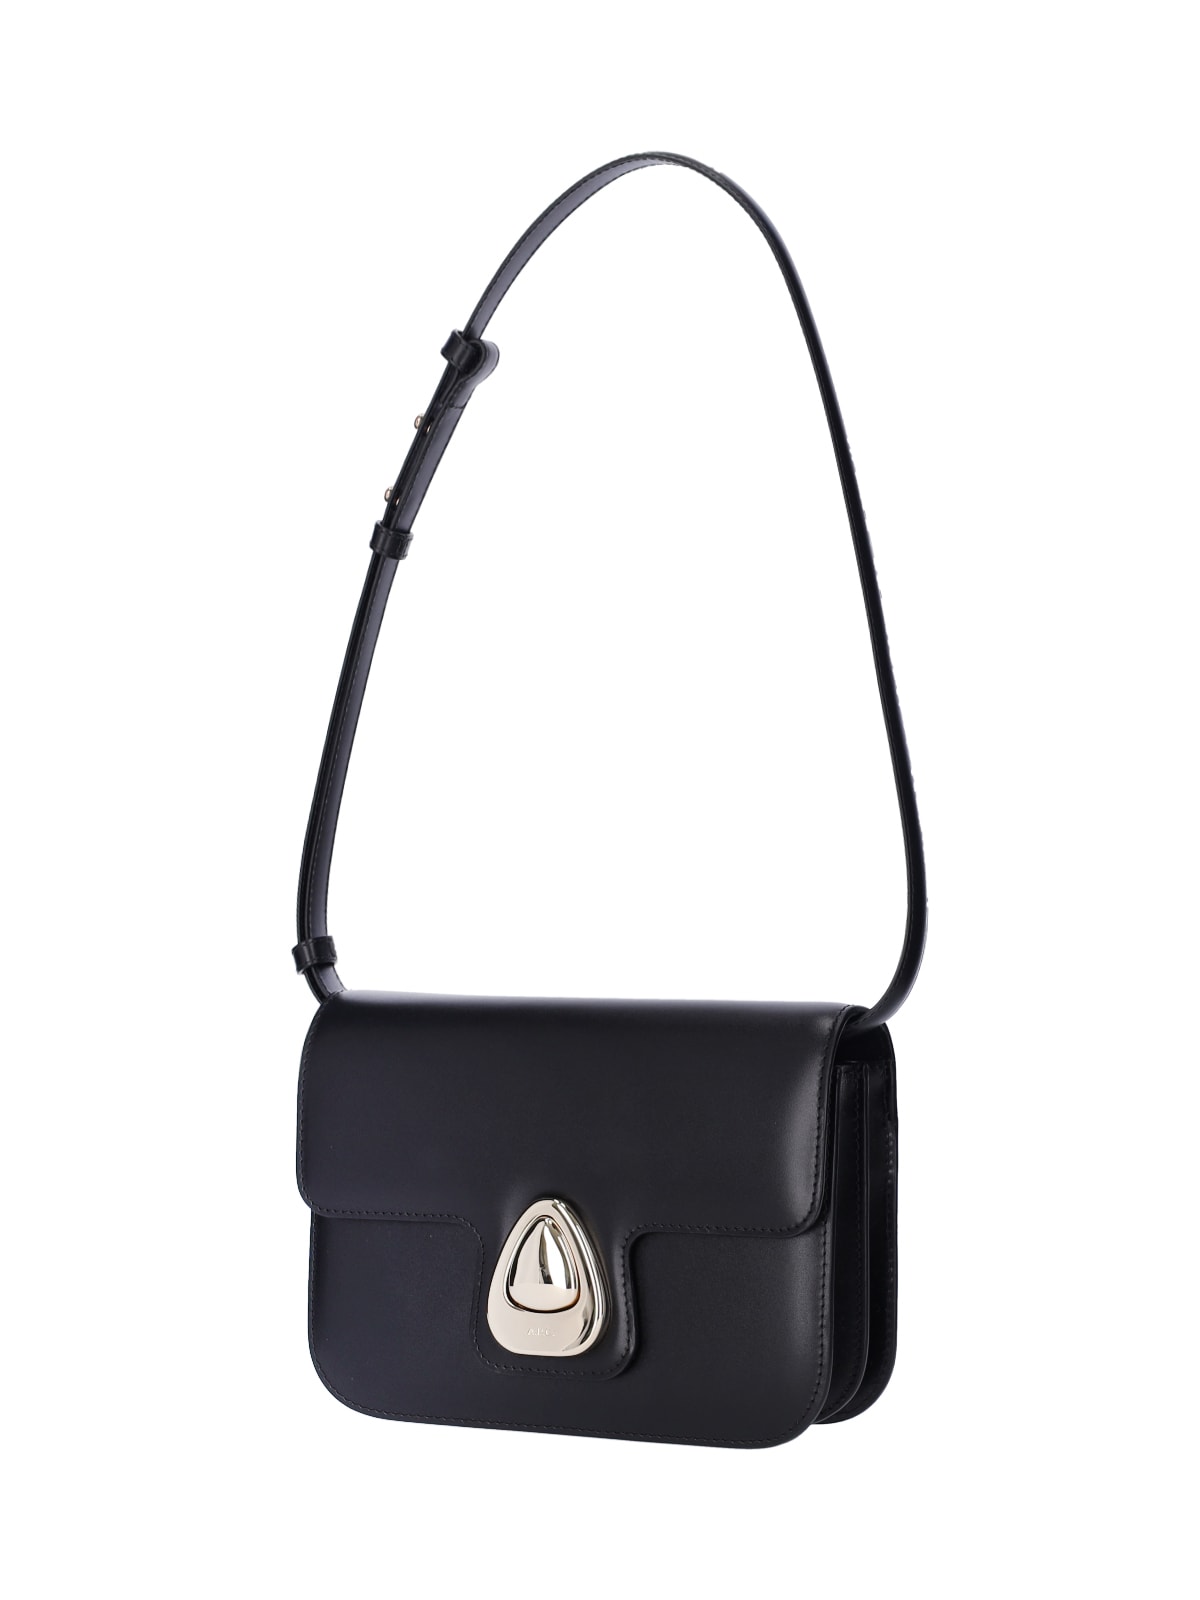 Shop Apc Small Shoulder Bag Astra In Black